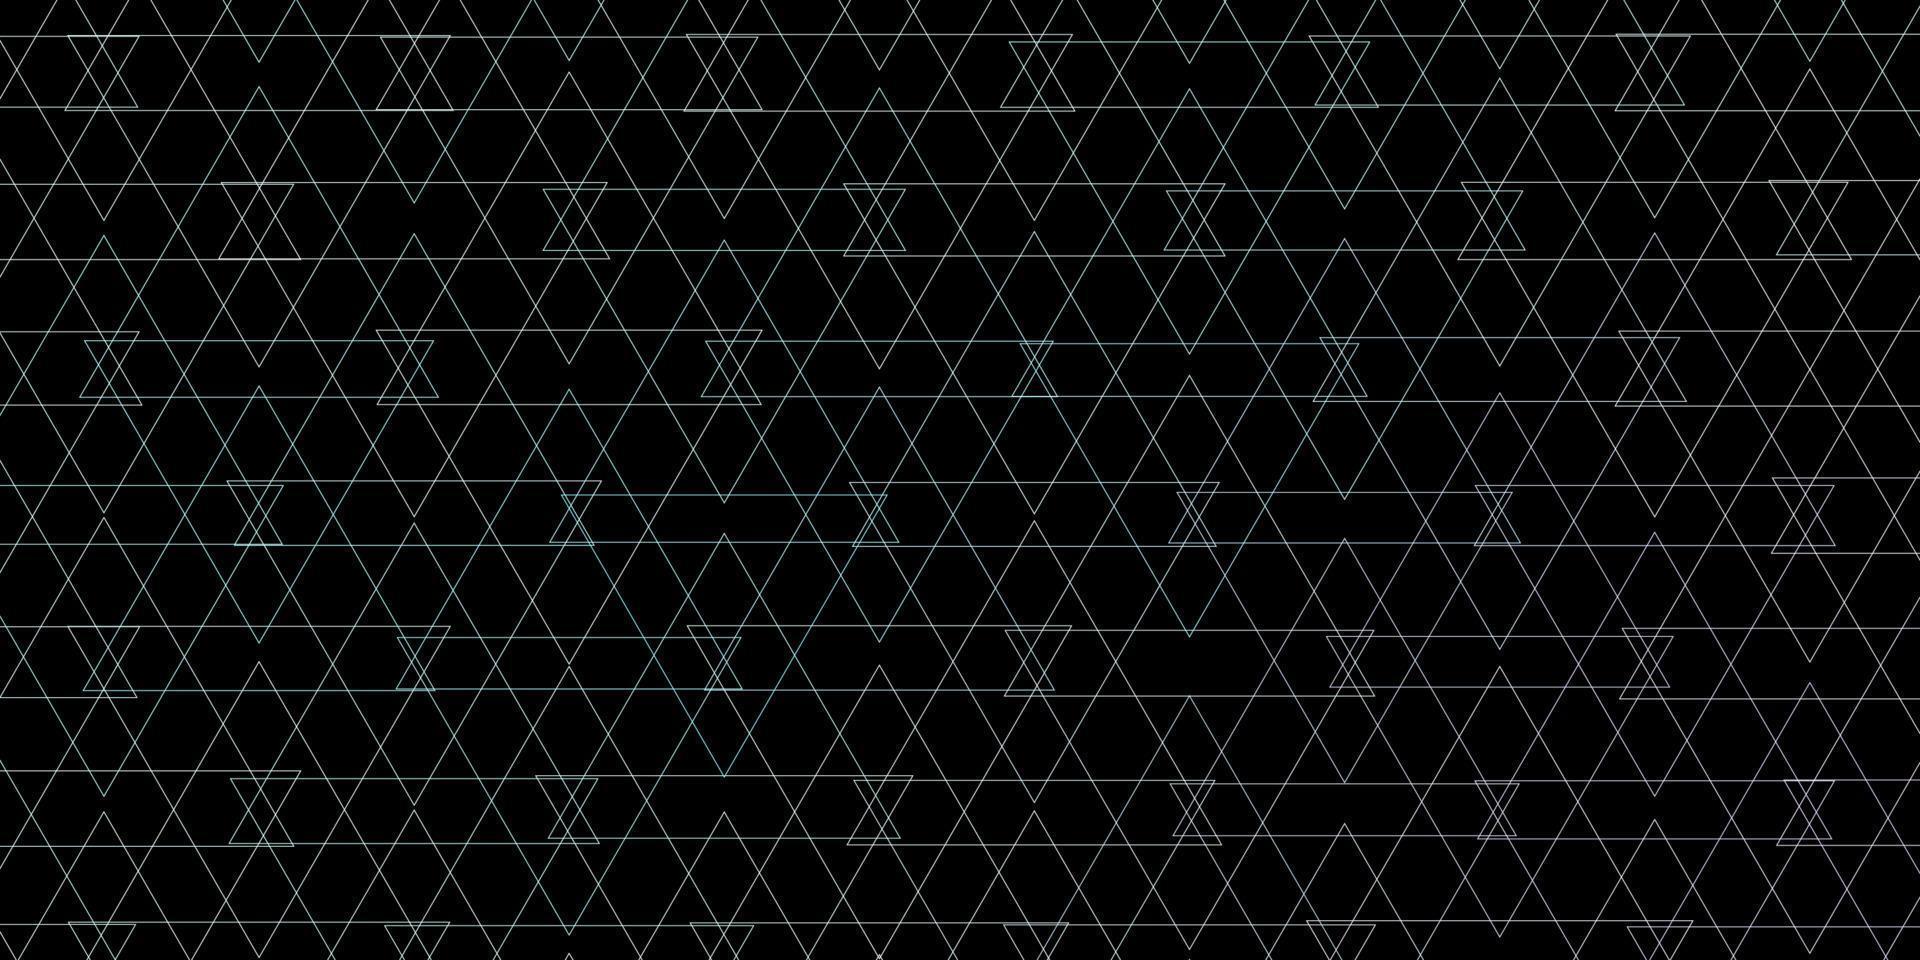 mörkblå vektormall med kristaller, trianglar. vektor